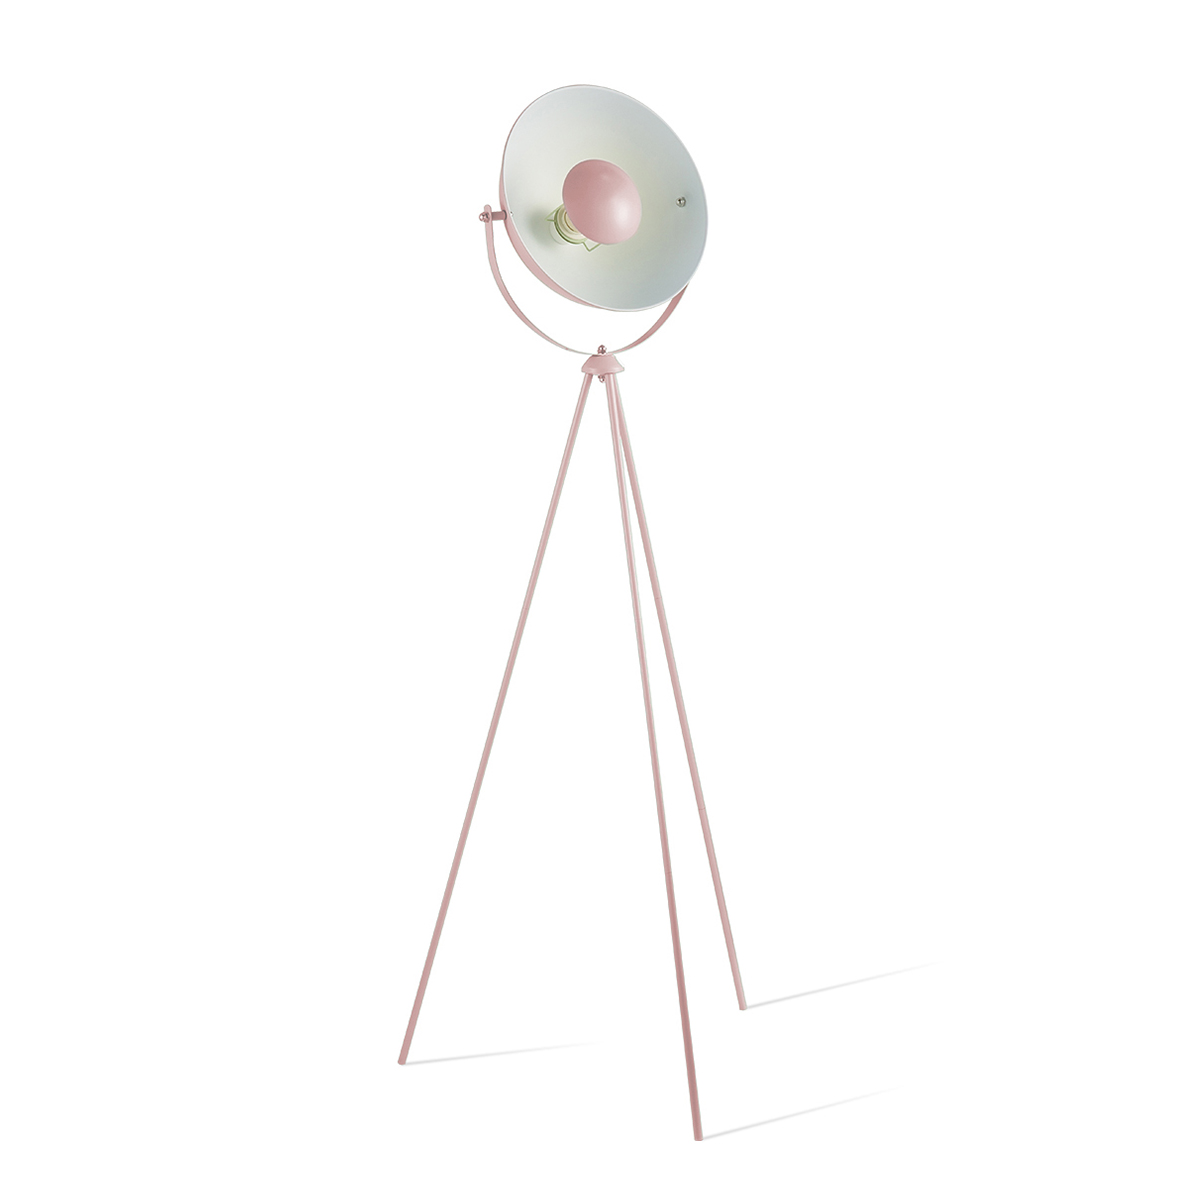 Tangla lighting - TLF7006-01PK - LED floor lamp 1 Light - metal in pink - tripod - E27